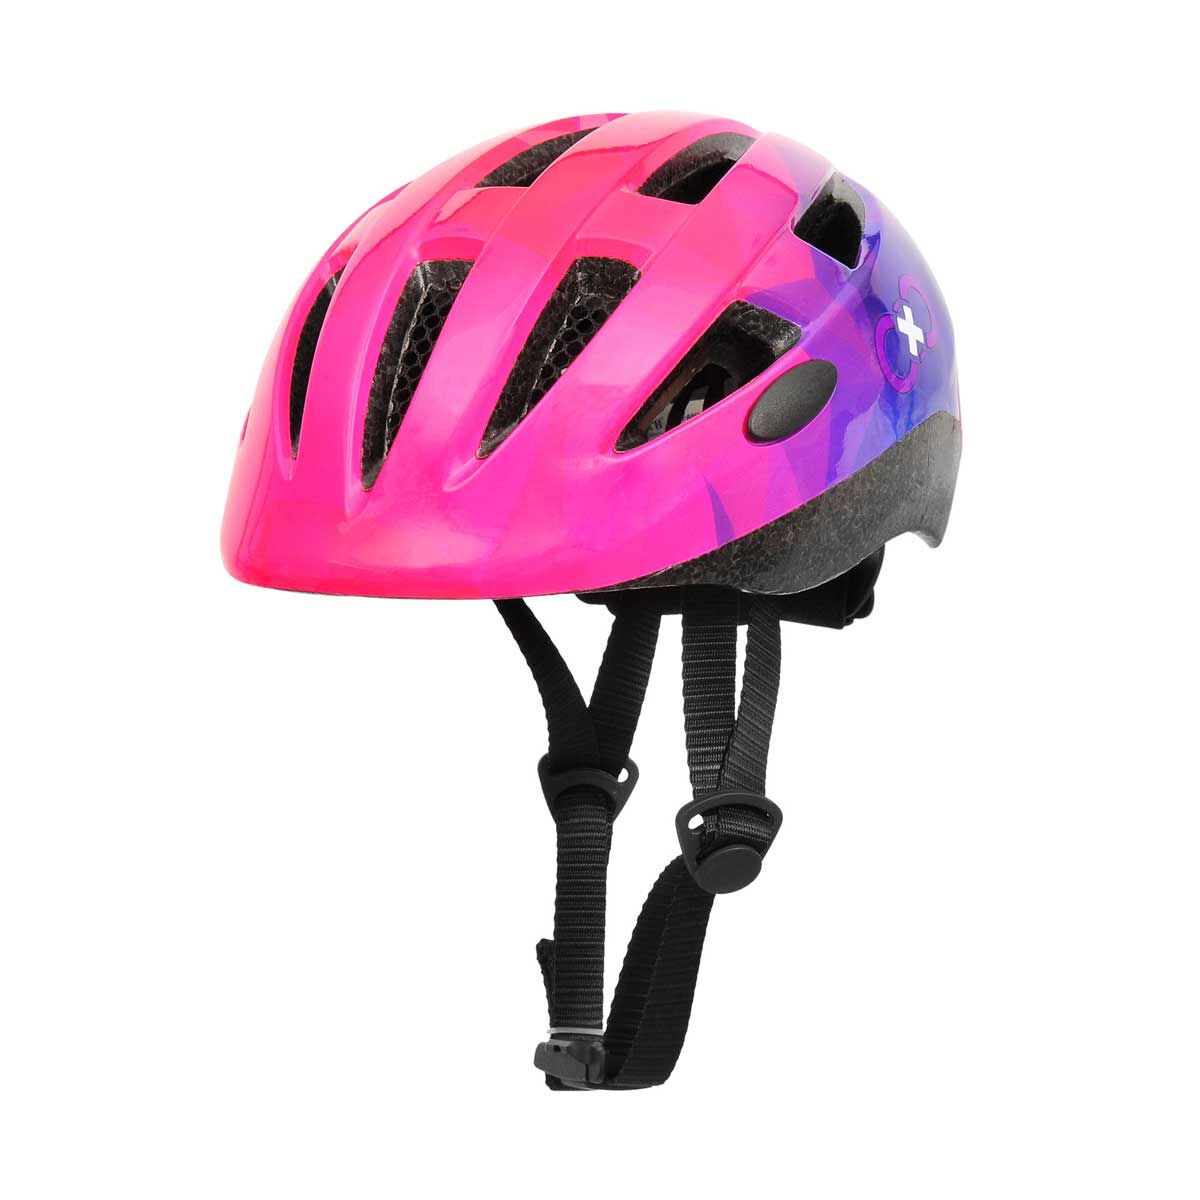 Rebel Sport Bike Helmet Sale Online, 50% OFF | empow-her.com